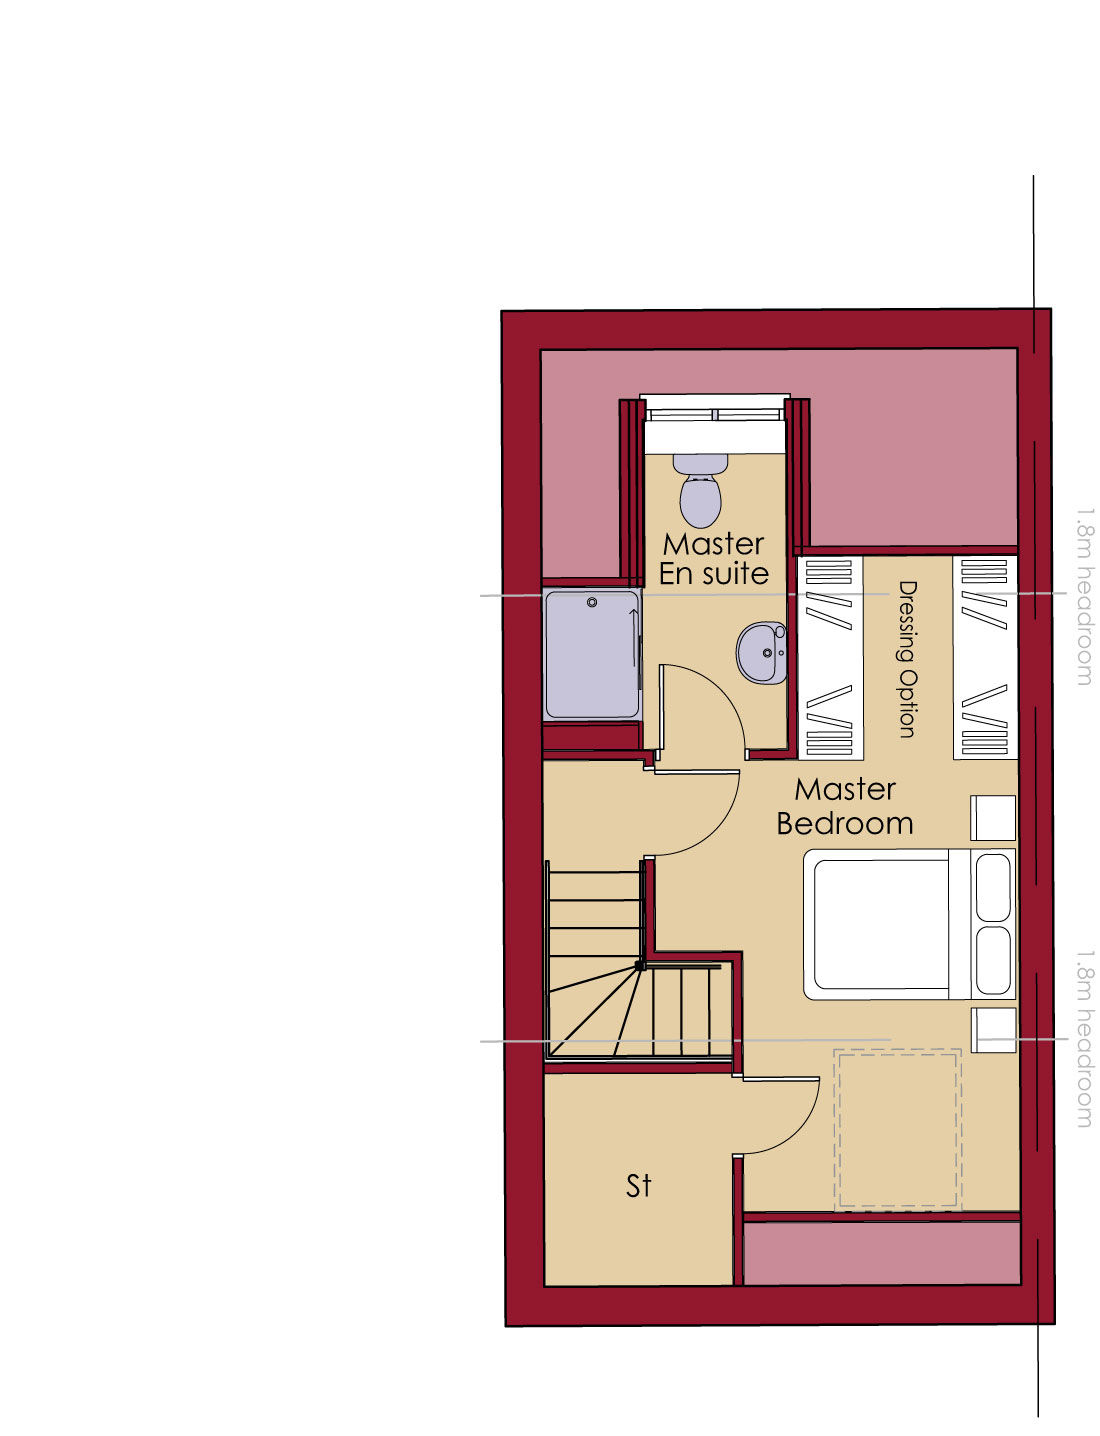 Second floor floorplan